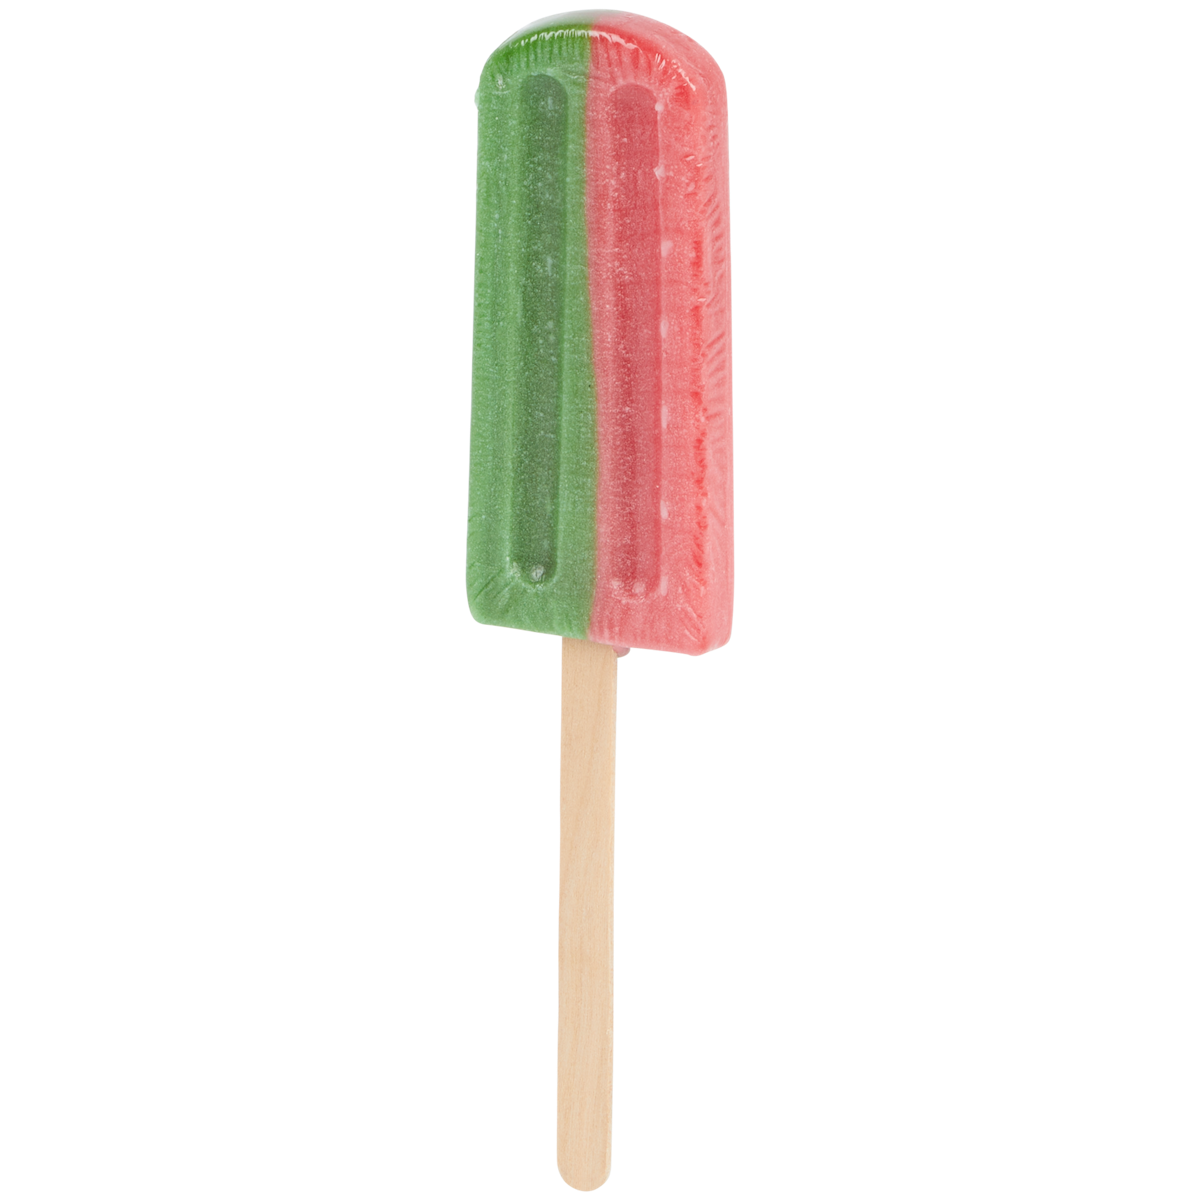 Funlab Ice Pop Candy Lutscher